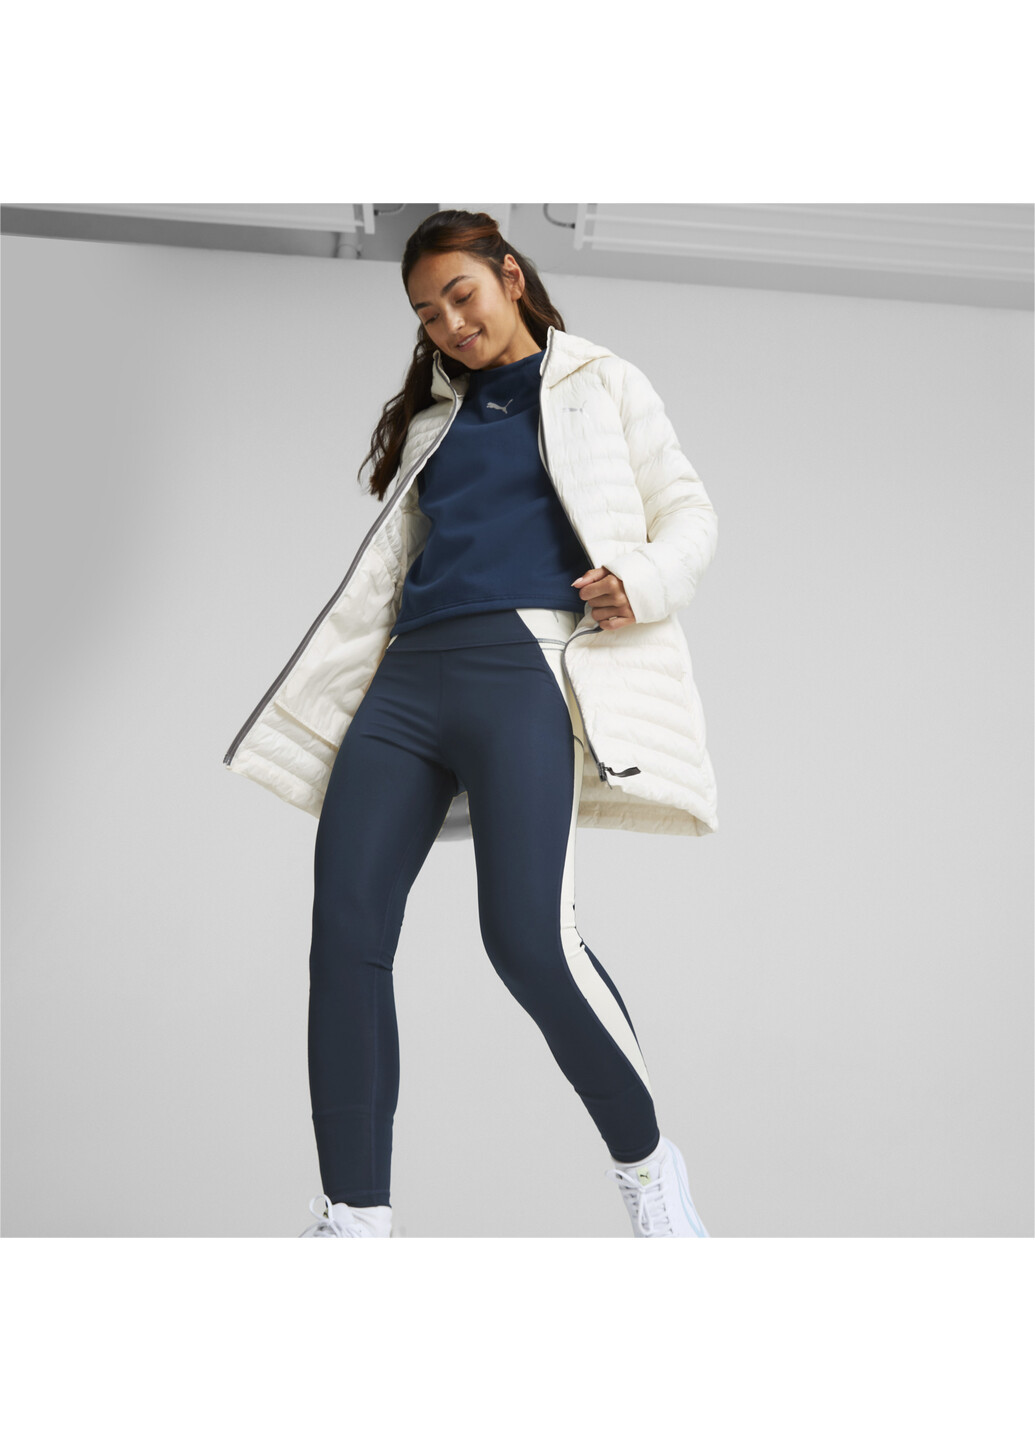 Куртка PackLITE Jacket Women Puma однотонный белый спортивный нейлон, полиэстер